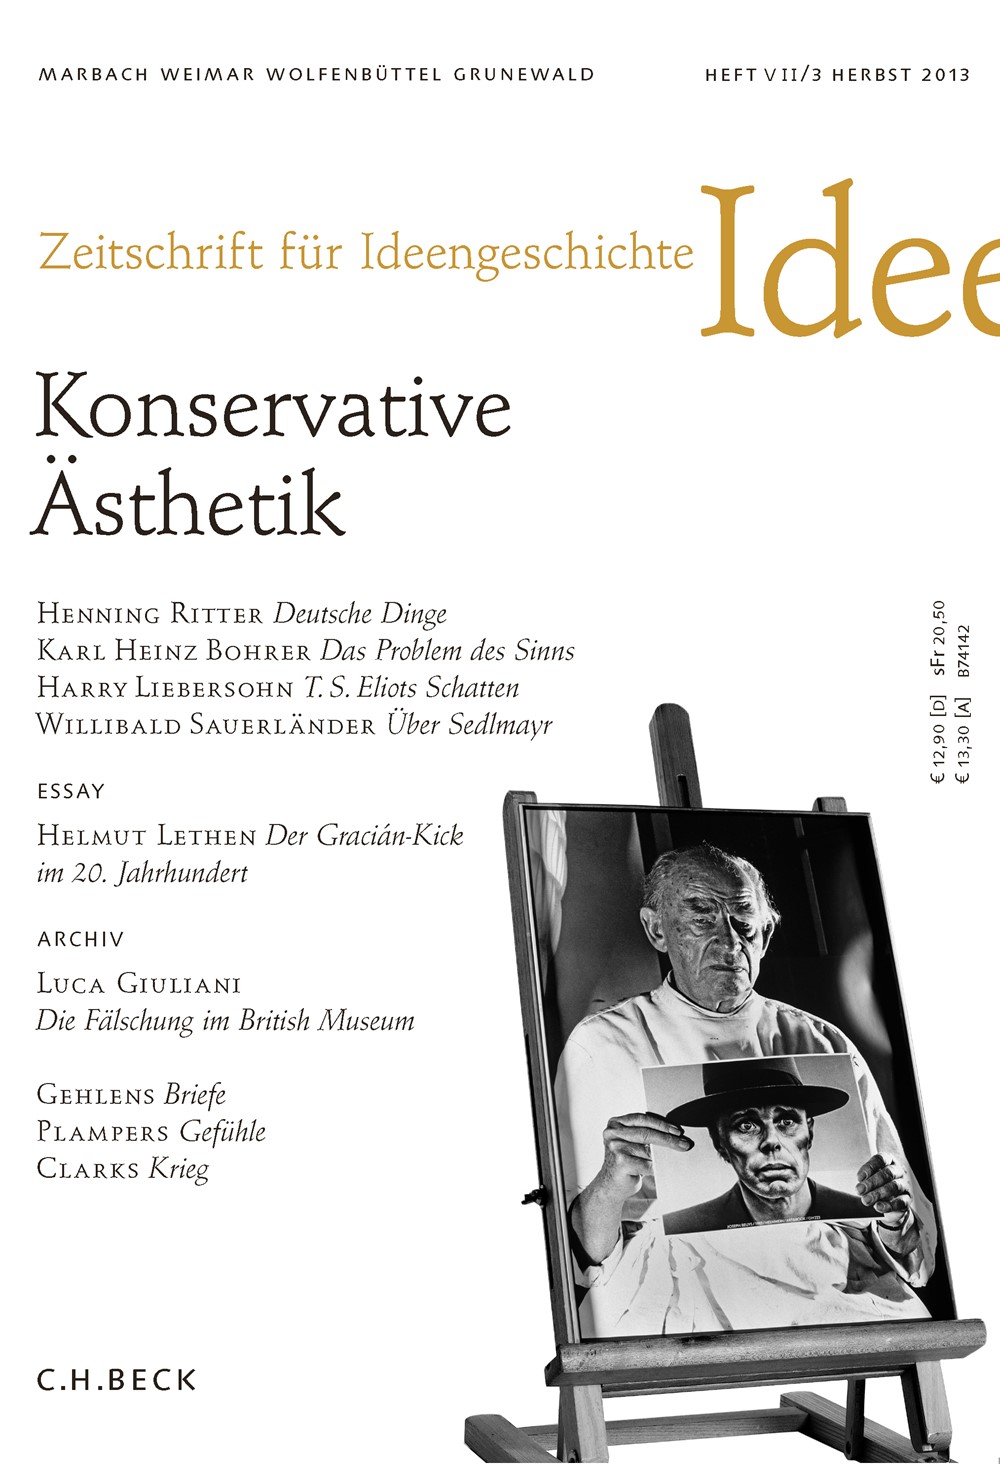 Cover von Heft VII/3 Herbst 2013